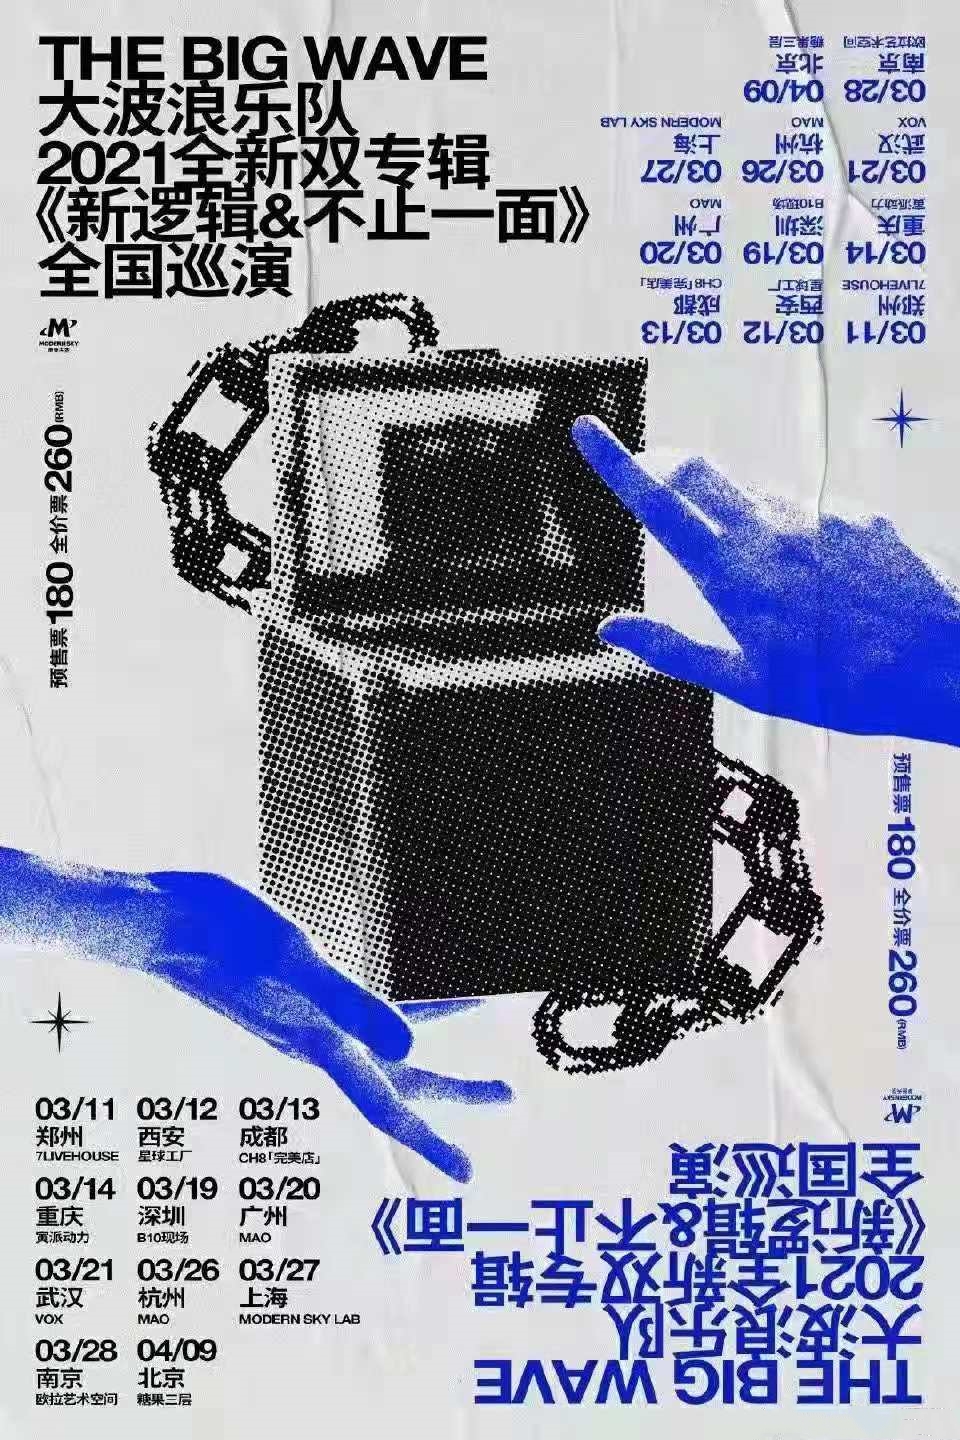 大波浪乐队2021全新双专辑巡演《新逻辑》《不止一面》全国巡演-重庆站